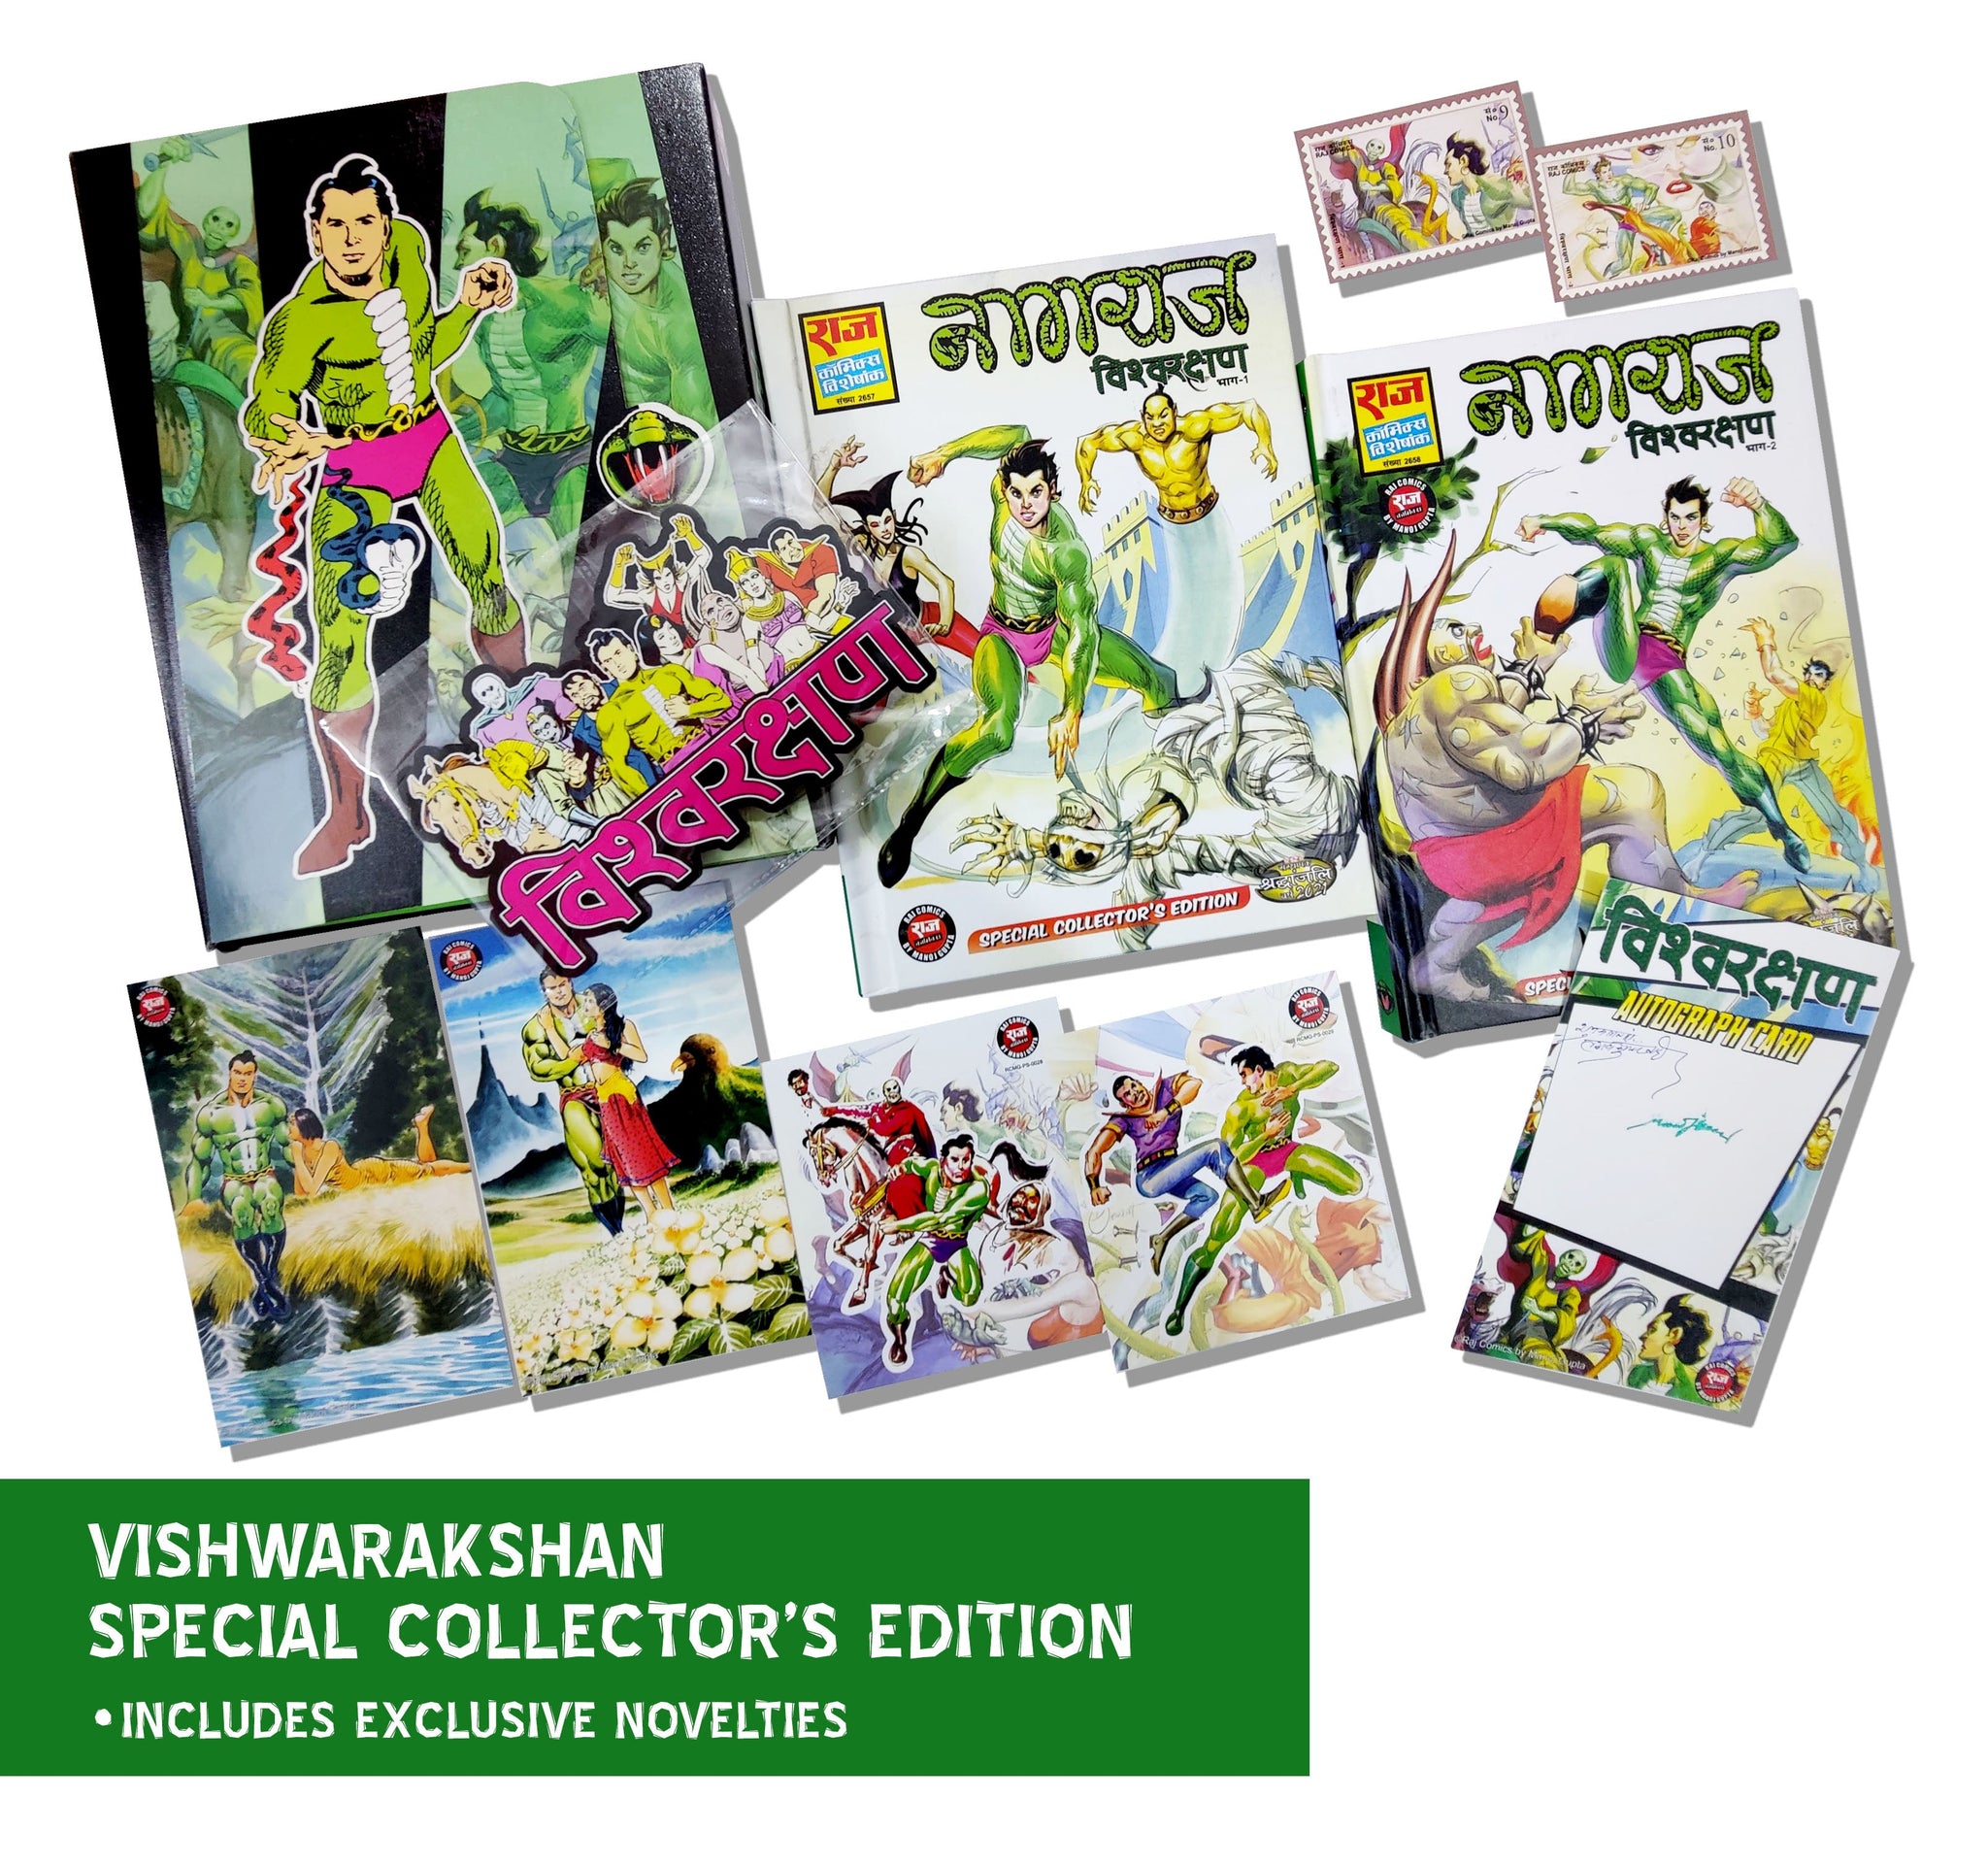 Vishwarakshan Special Collector's Edition